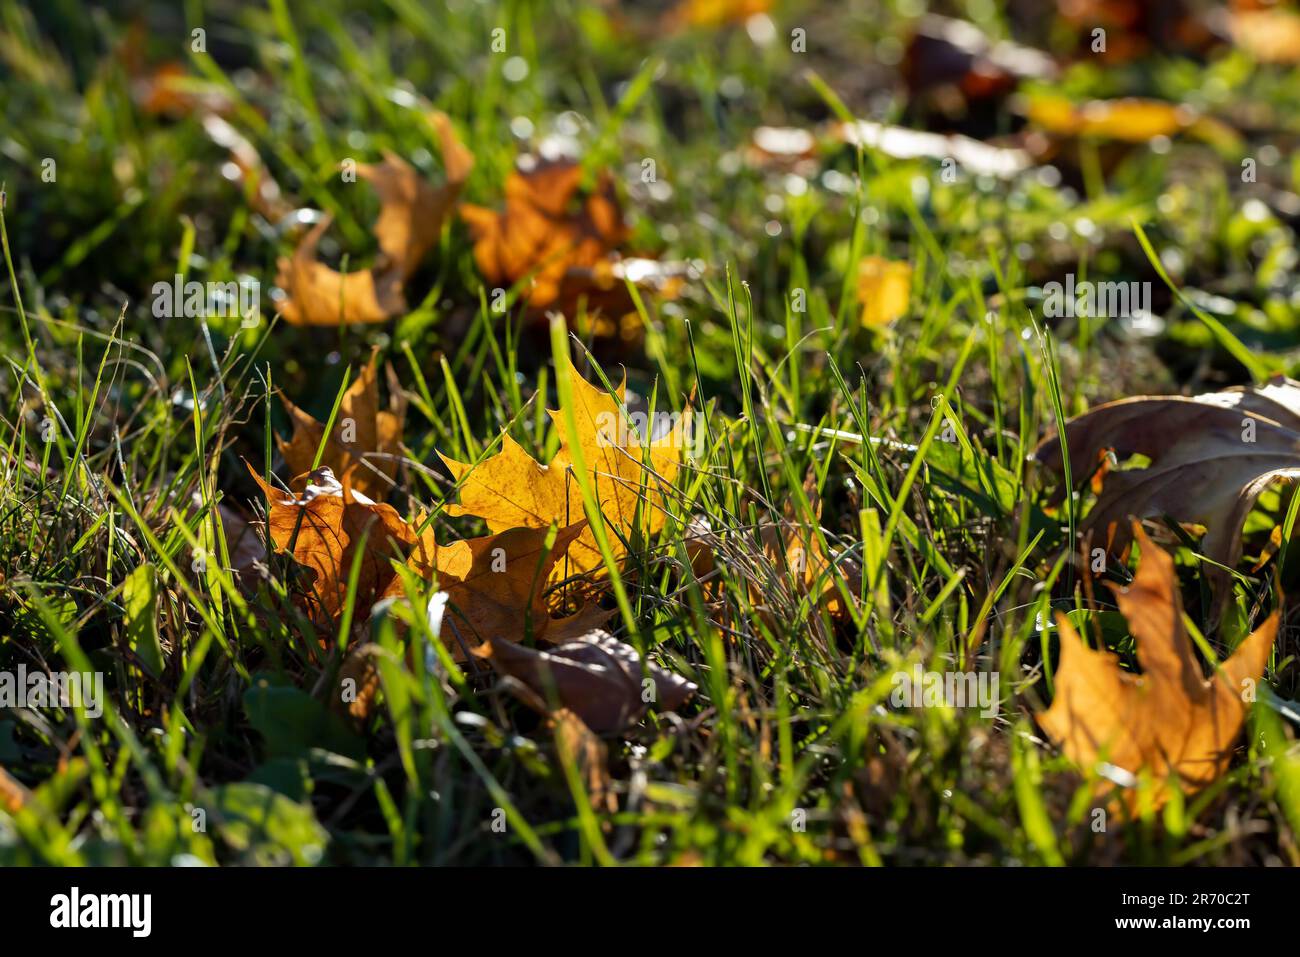 Érable pendant la saison d'automne, changements dans l'érable pendant la chute des feuilles d'automne Banque D'Images